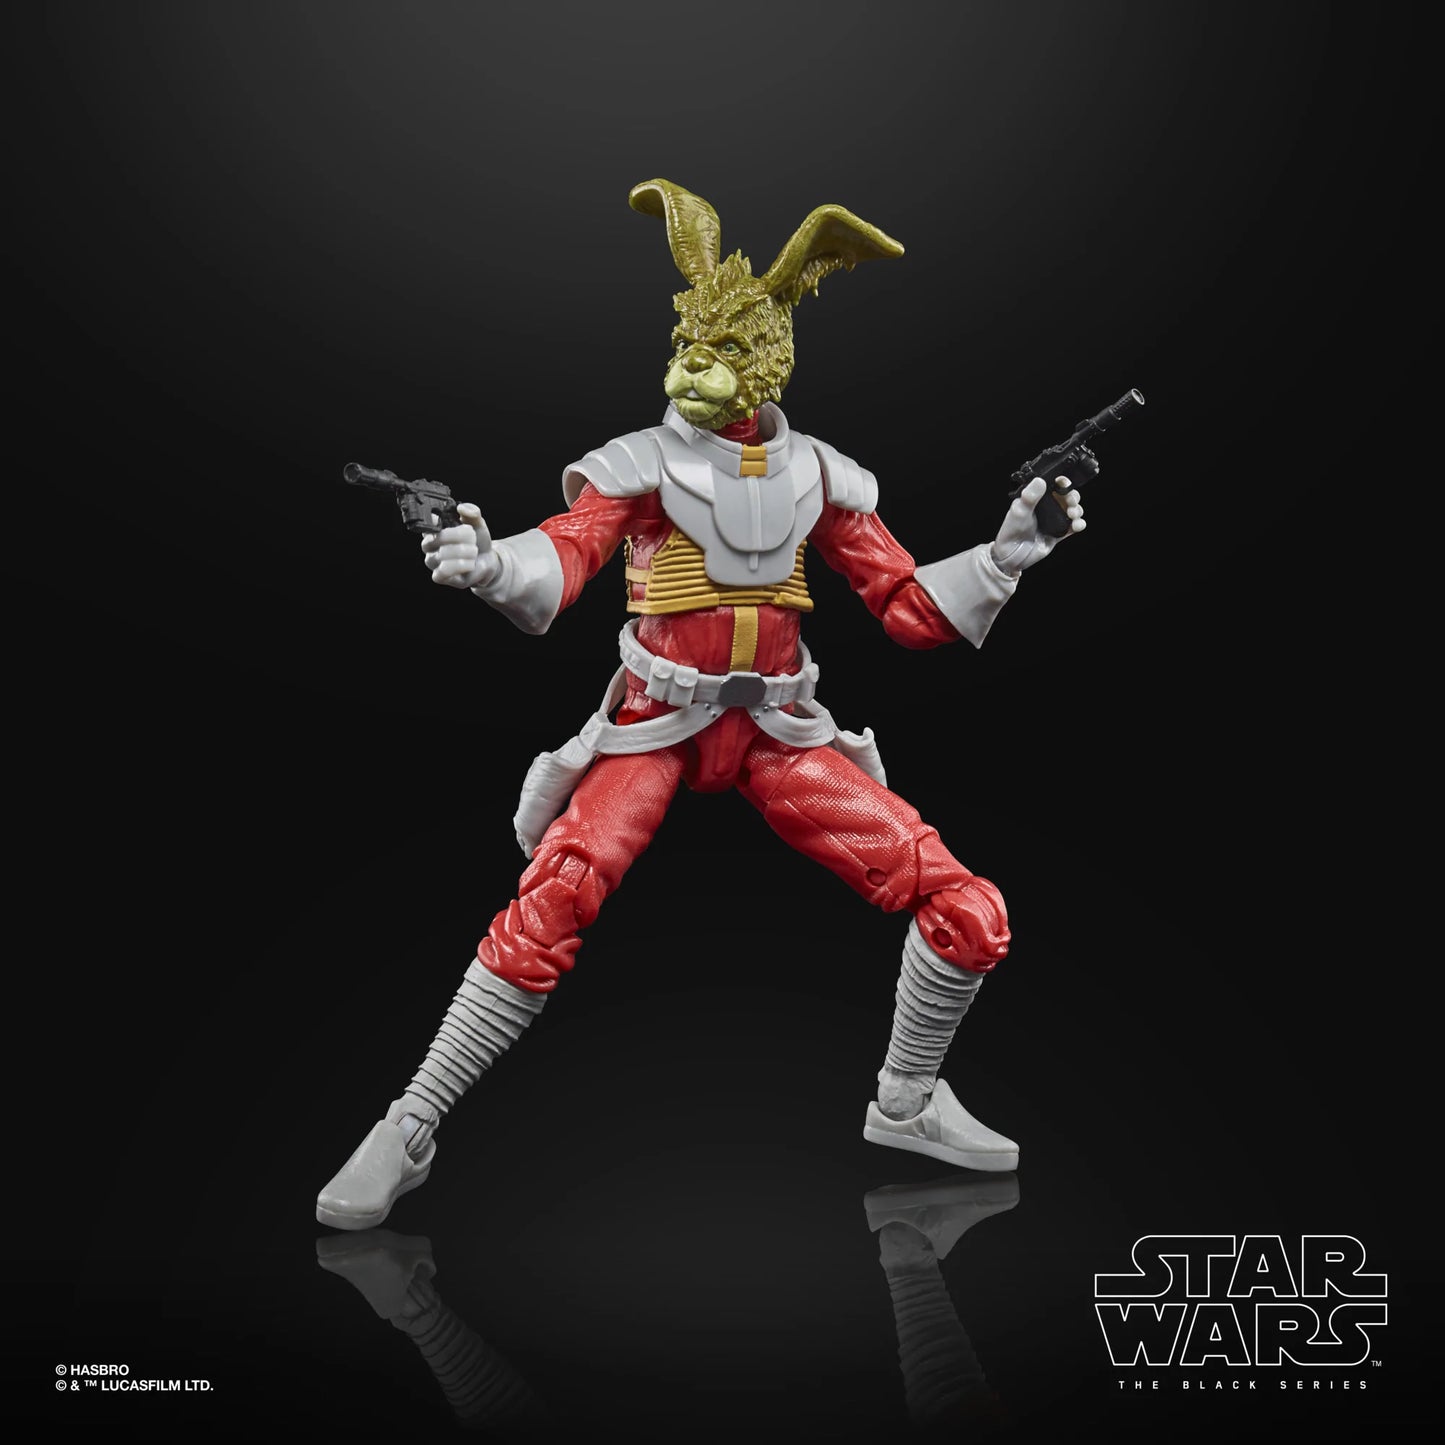 Star Wars Black Series 6in Jaxxon Rabbit Action Figure